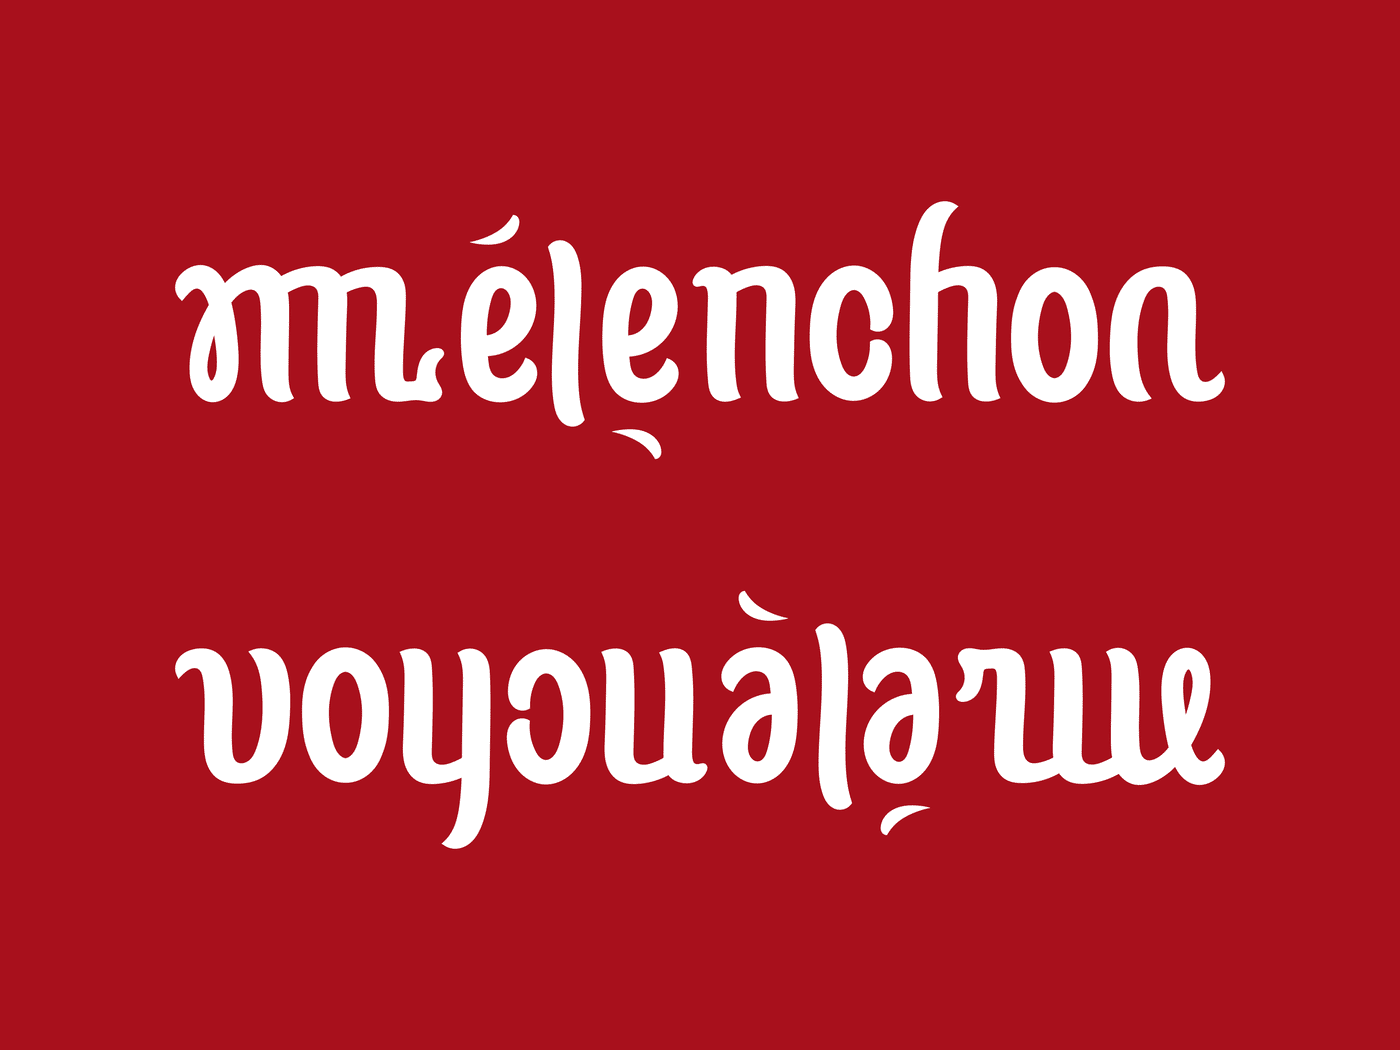 ambigramme Melenchon Voyou a la rue